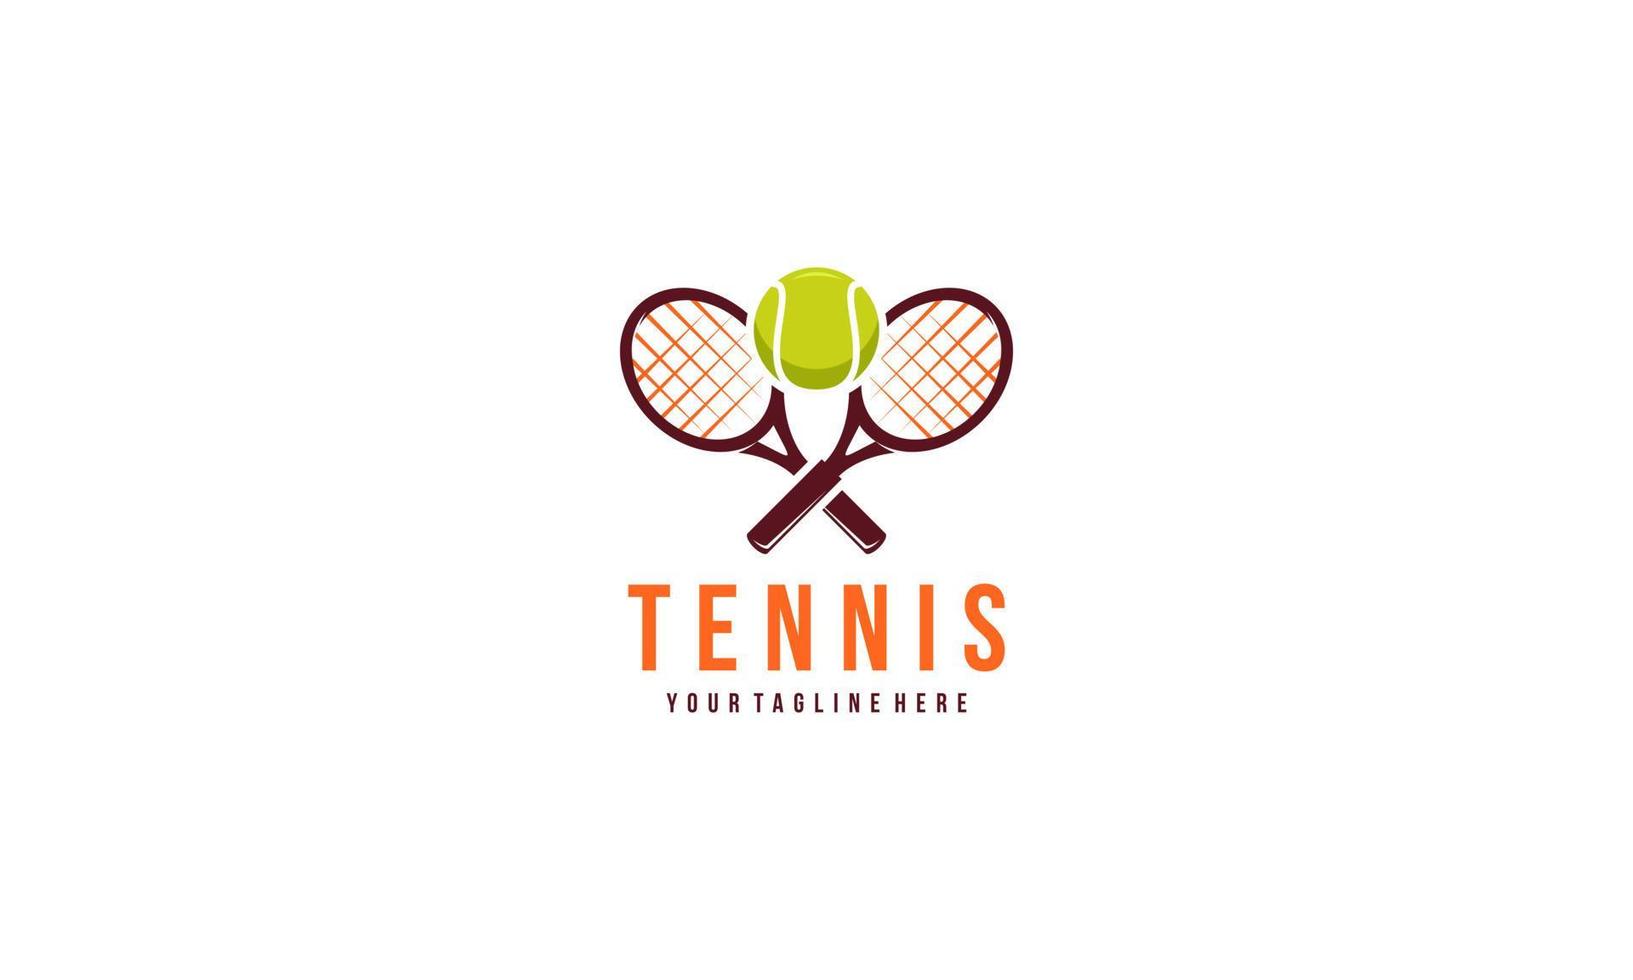 Tennis racket and ball logo design vector